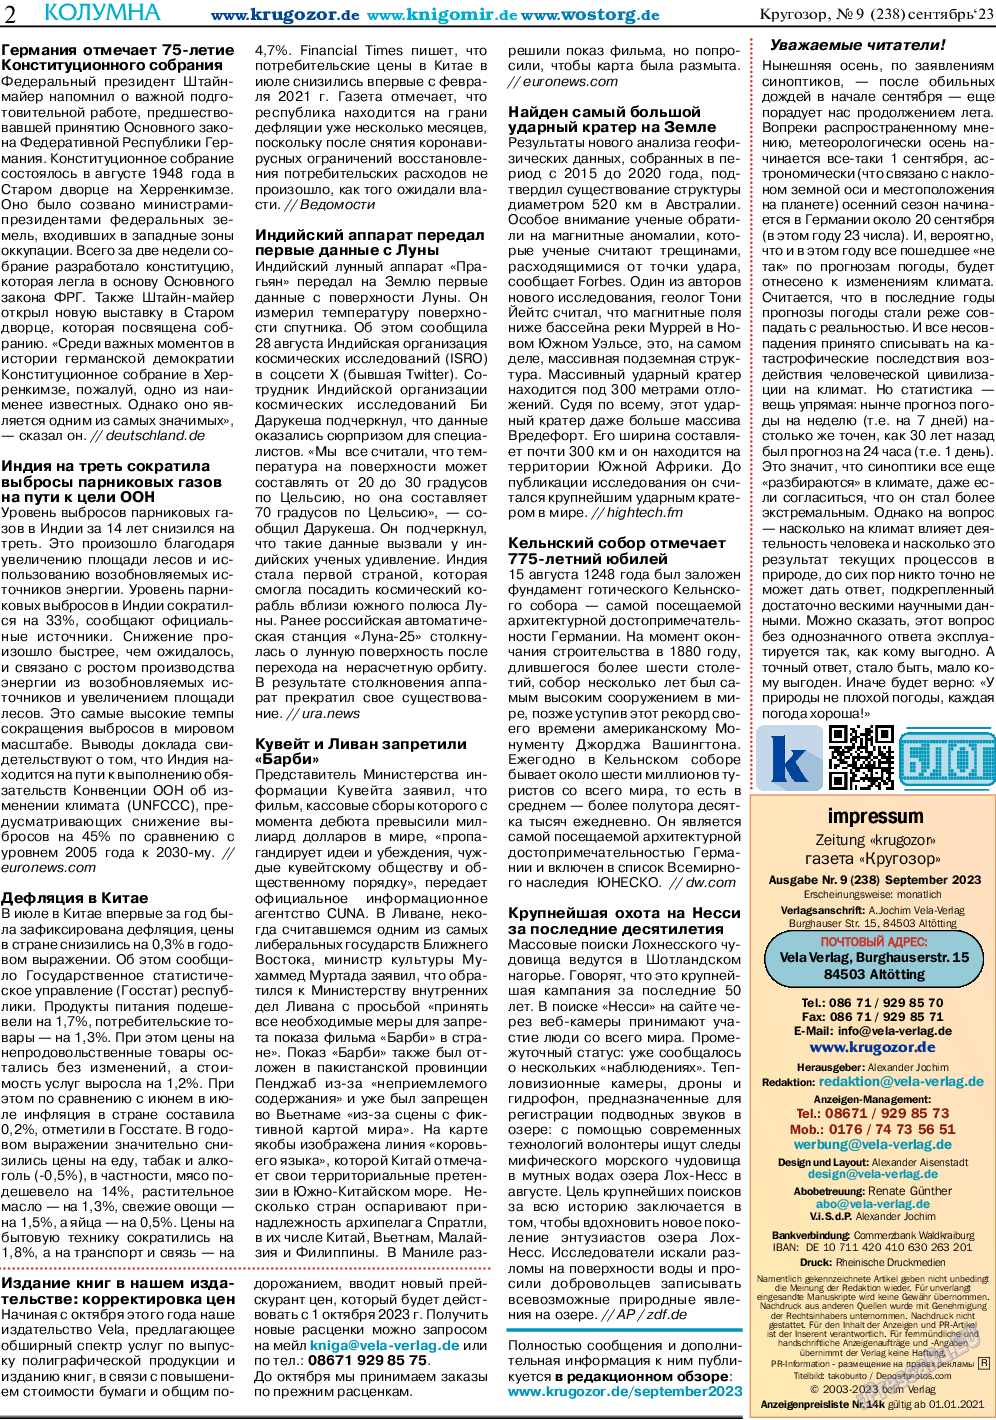 Кругозор, газета. 2023 №9 стр.2